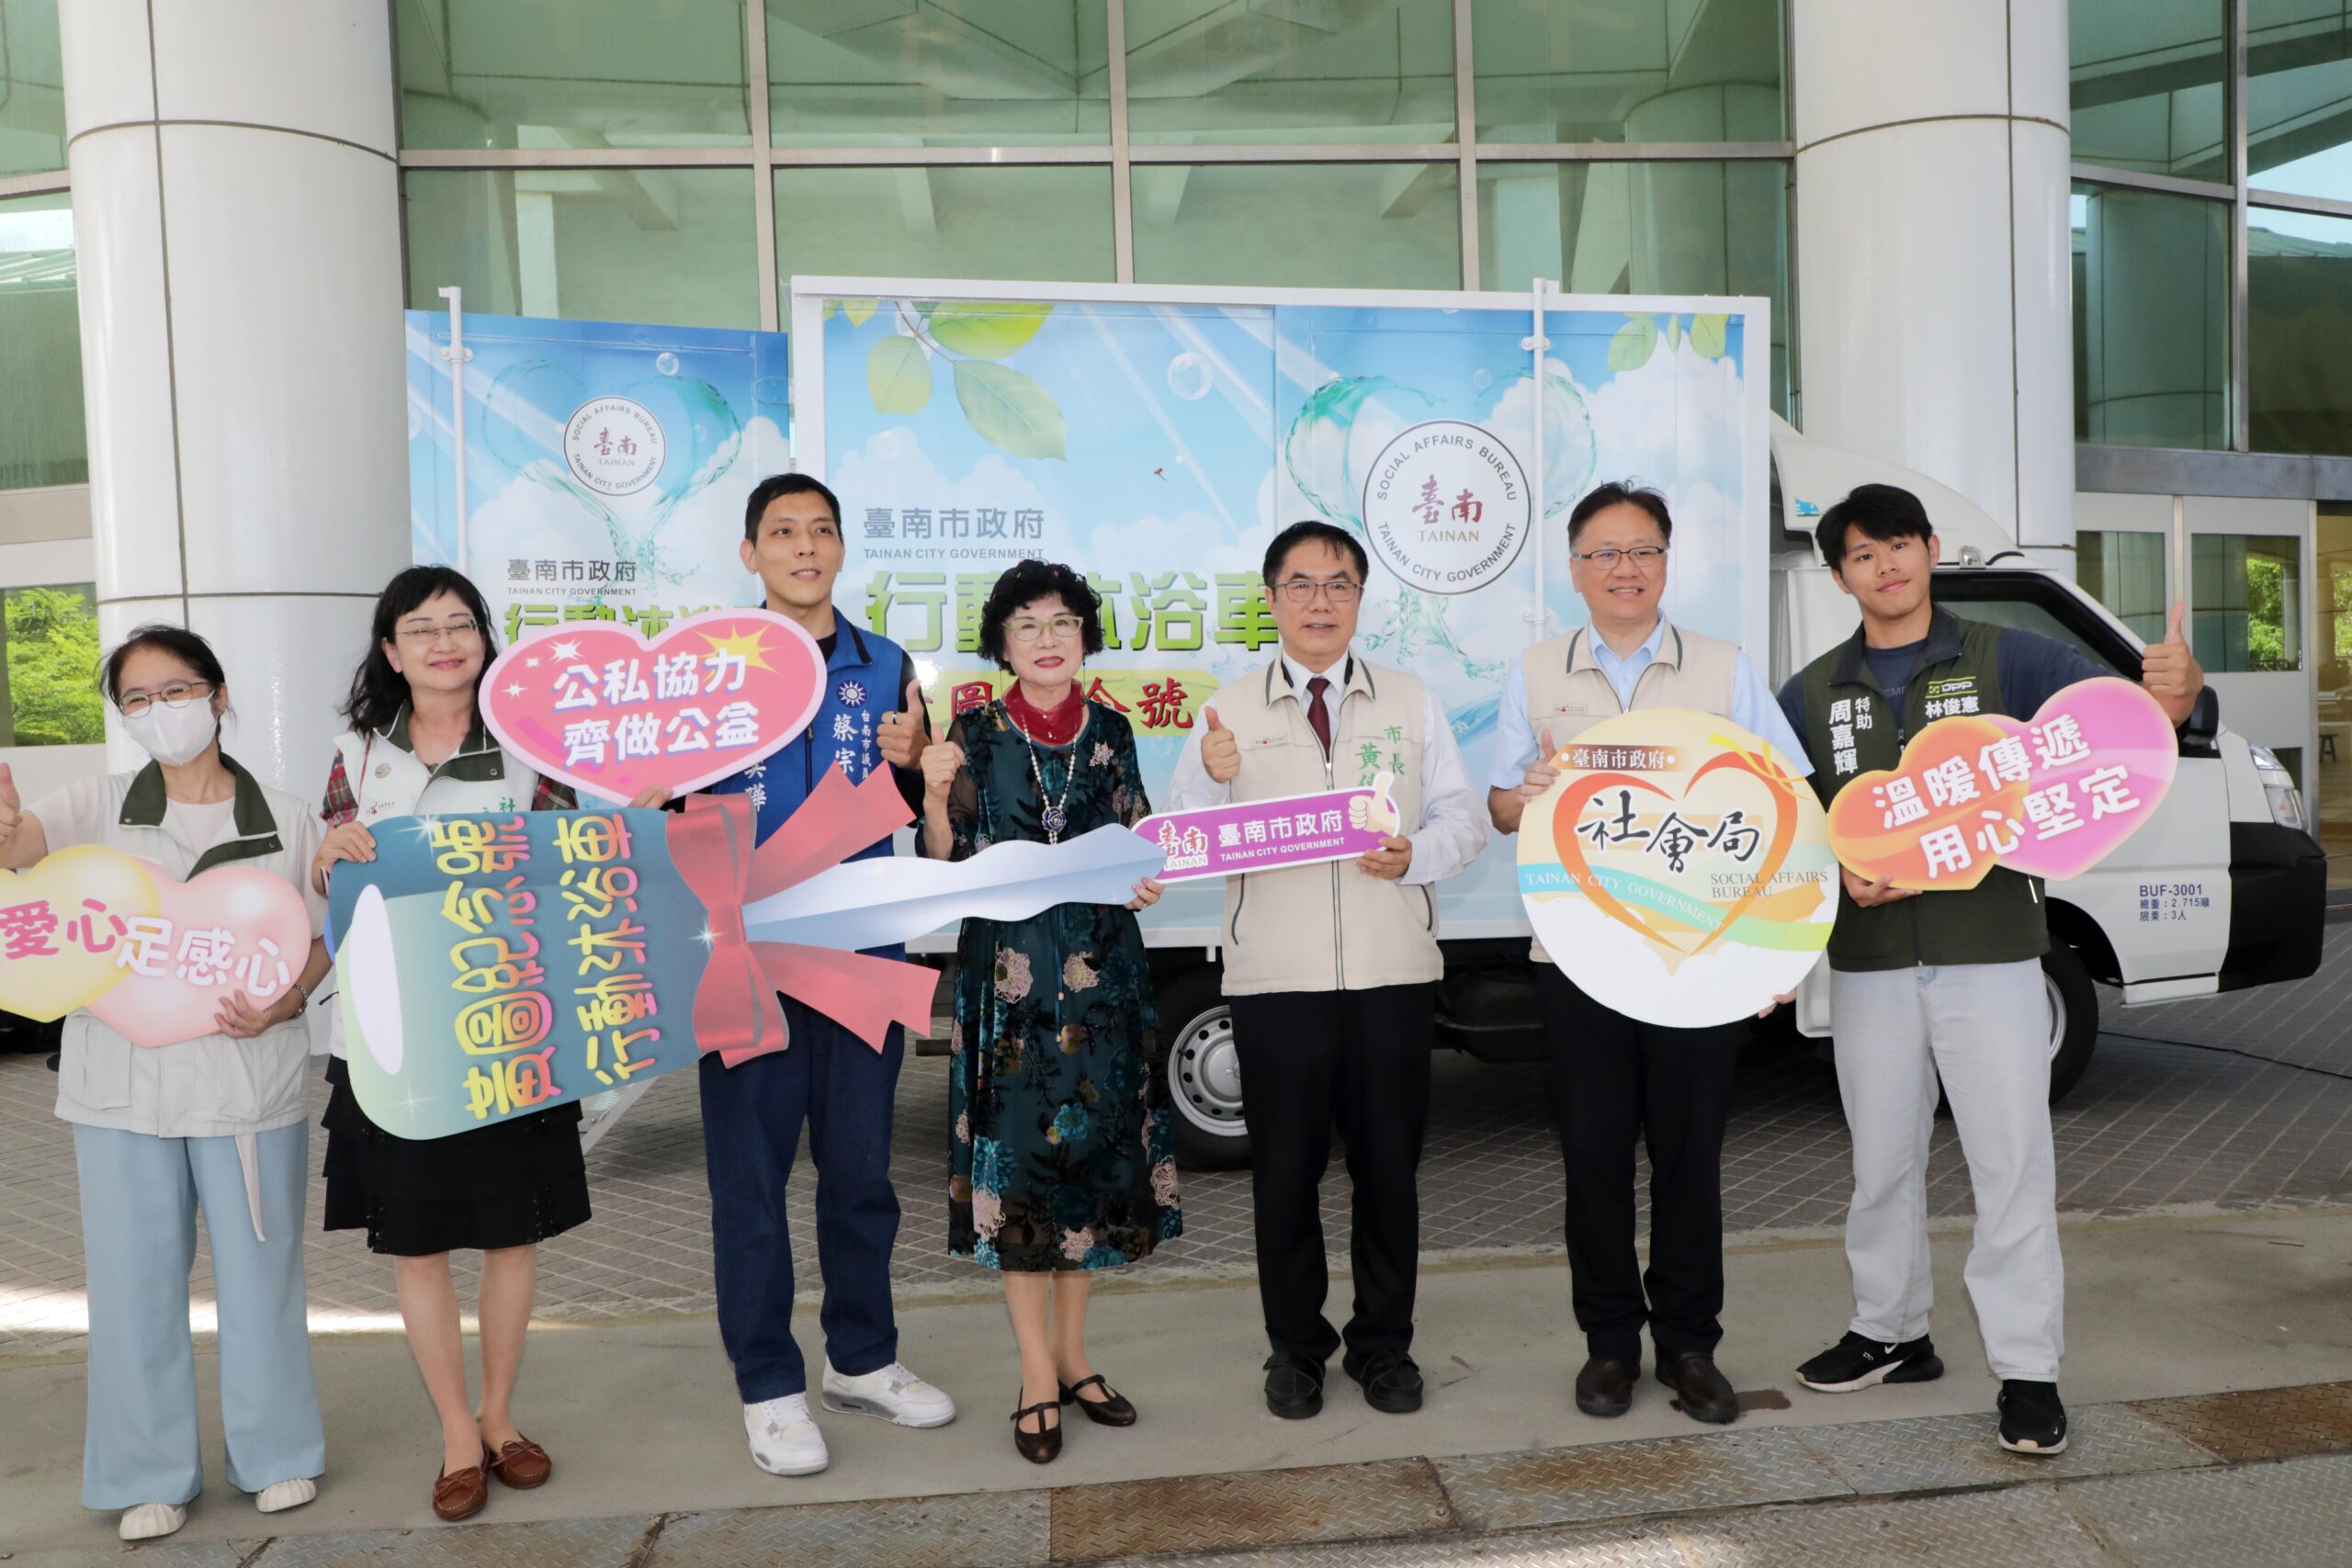 台南市民捐行動沐浴車助街友 黃偉哲盼公私協力打造有愛城市